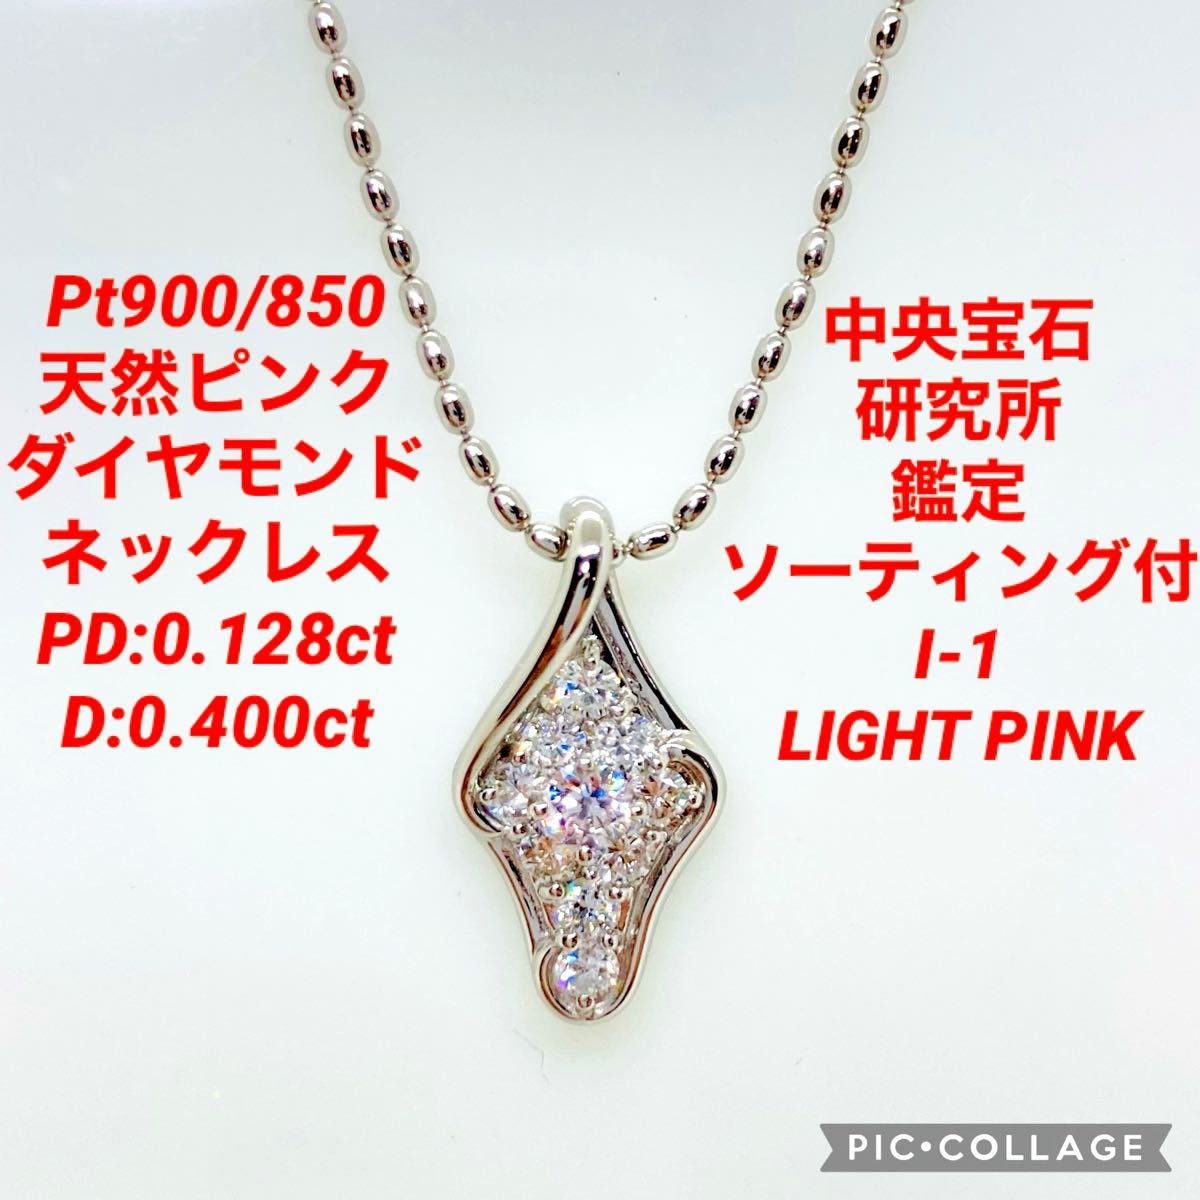 超目玉 ダイヤモンドネックレス 美品 - 通販 - ssciindia.com